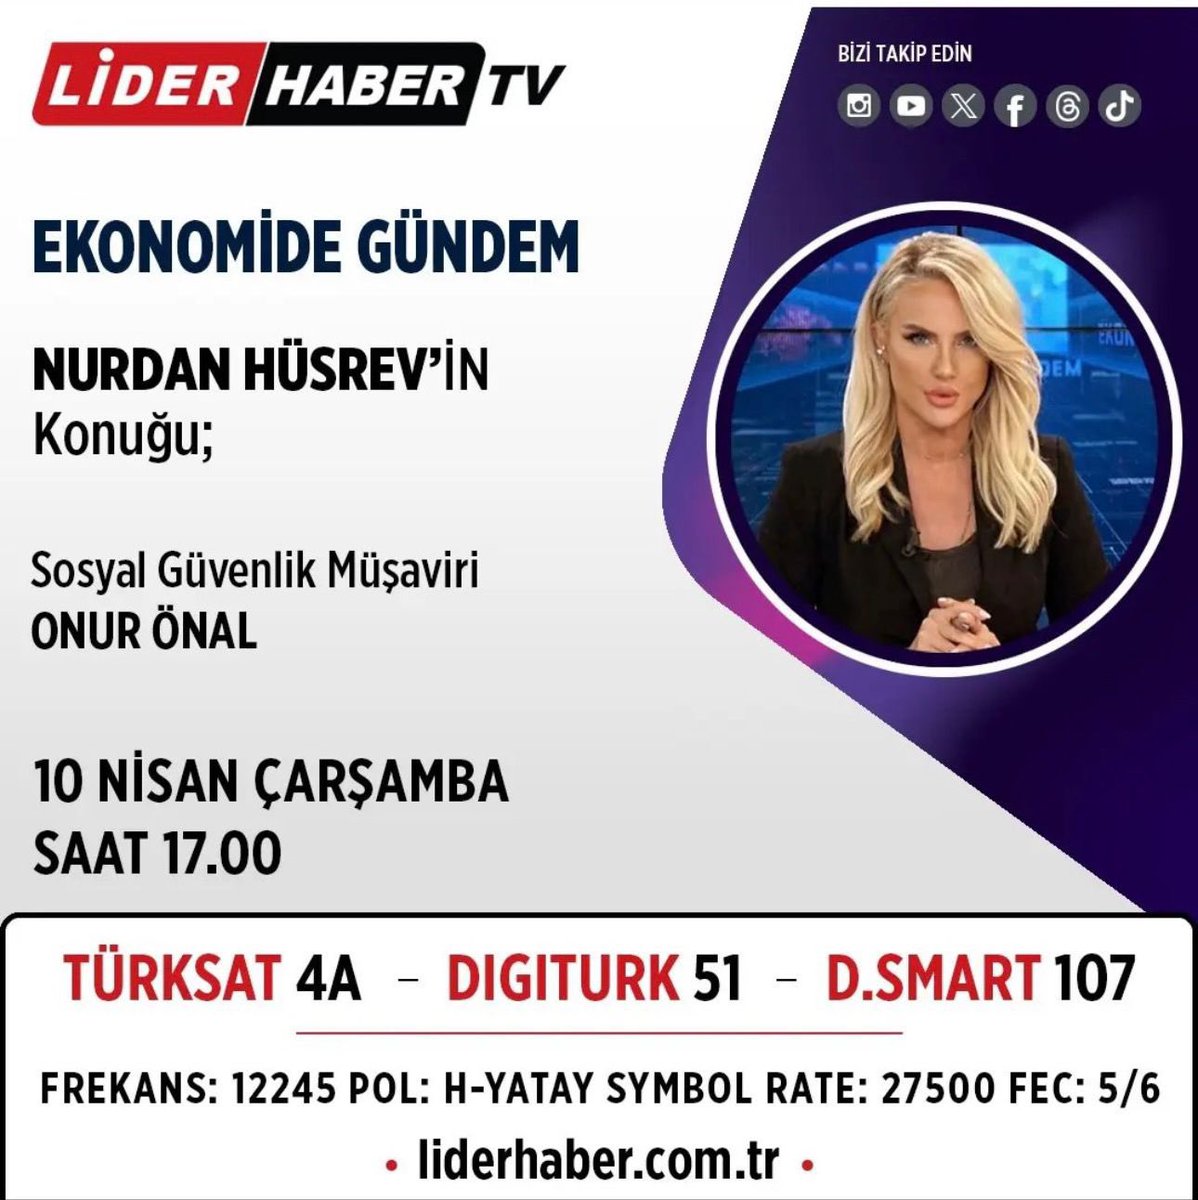 Saat 17:00’de Lider TV’de Sevgili Nurdan Hüsrev’in hazırlayıp sunduğu “Ekonomi’de Gündem” programında canlı yayın konuğu olacağım …@nurdanhusrev